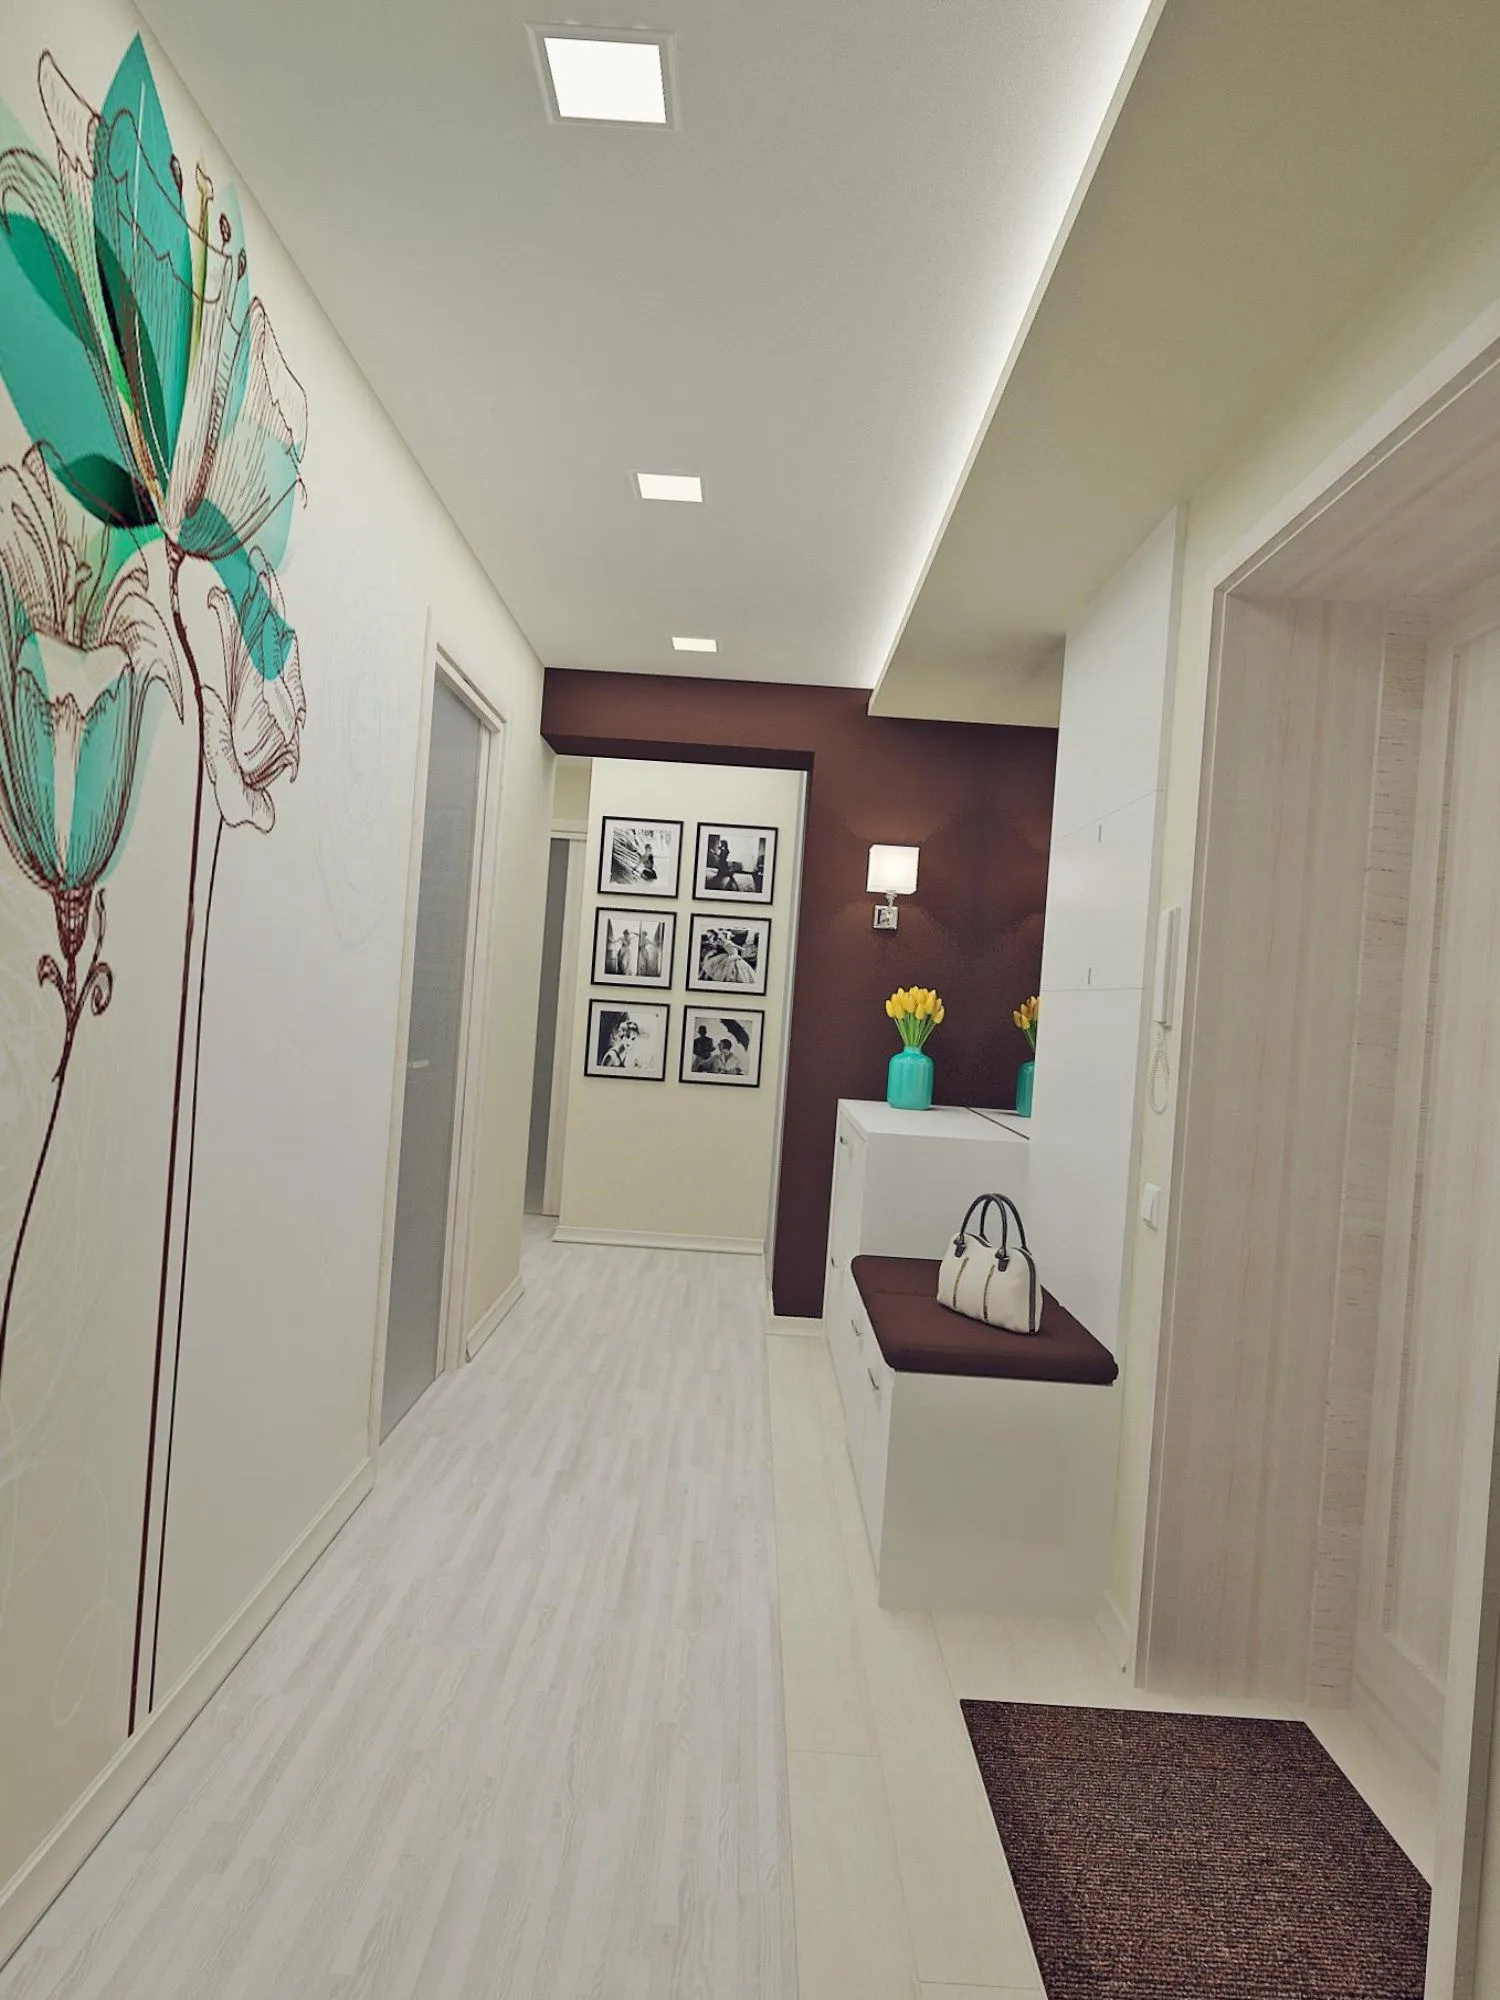 Как оформить длинный коридор в квартире фото узкий